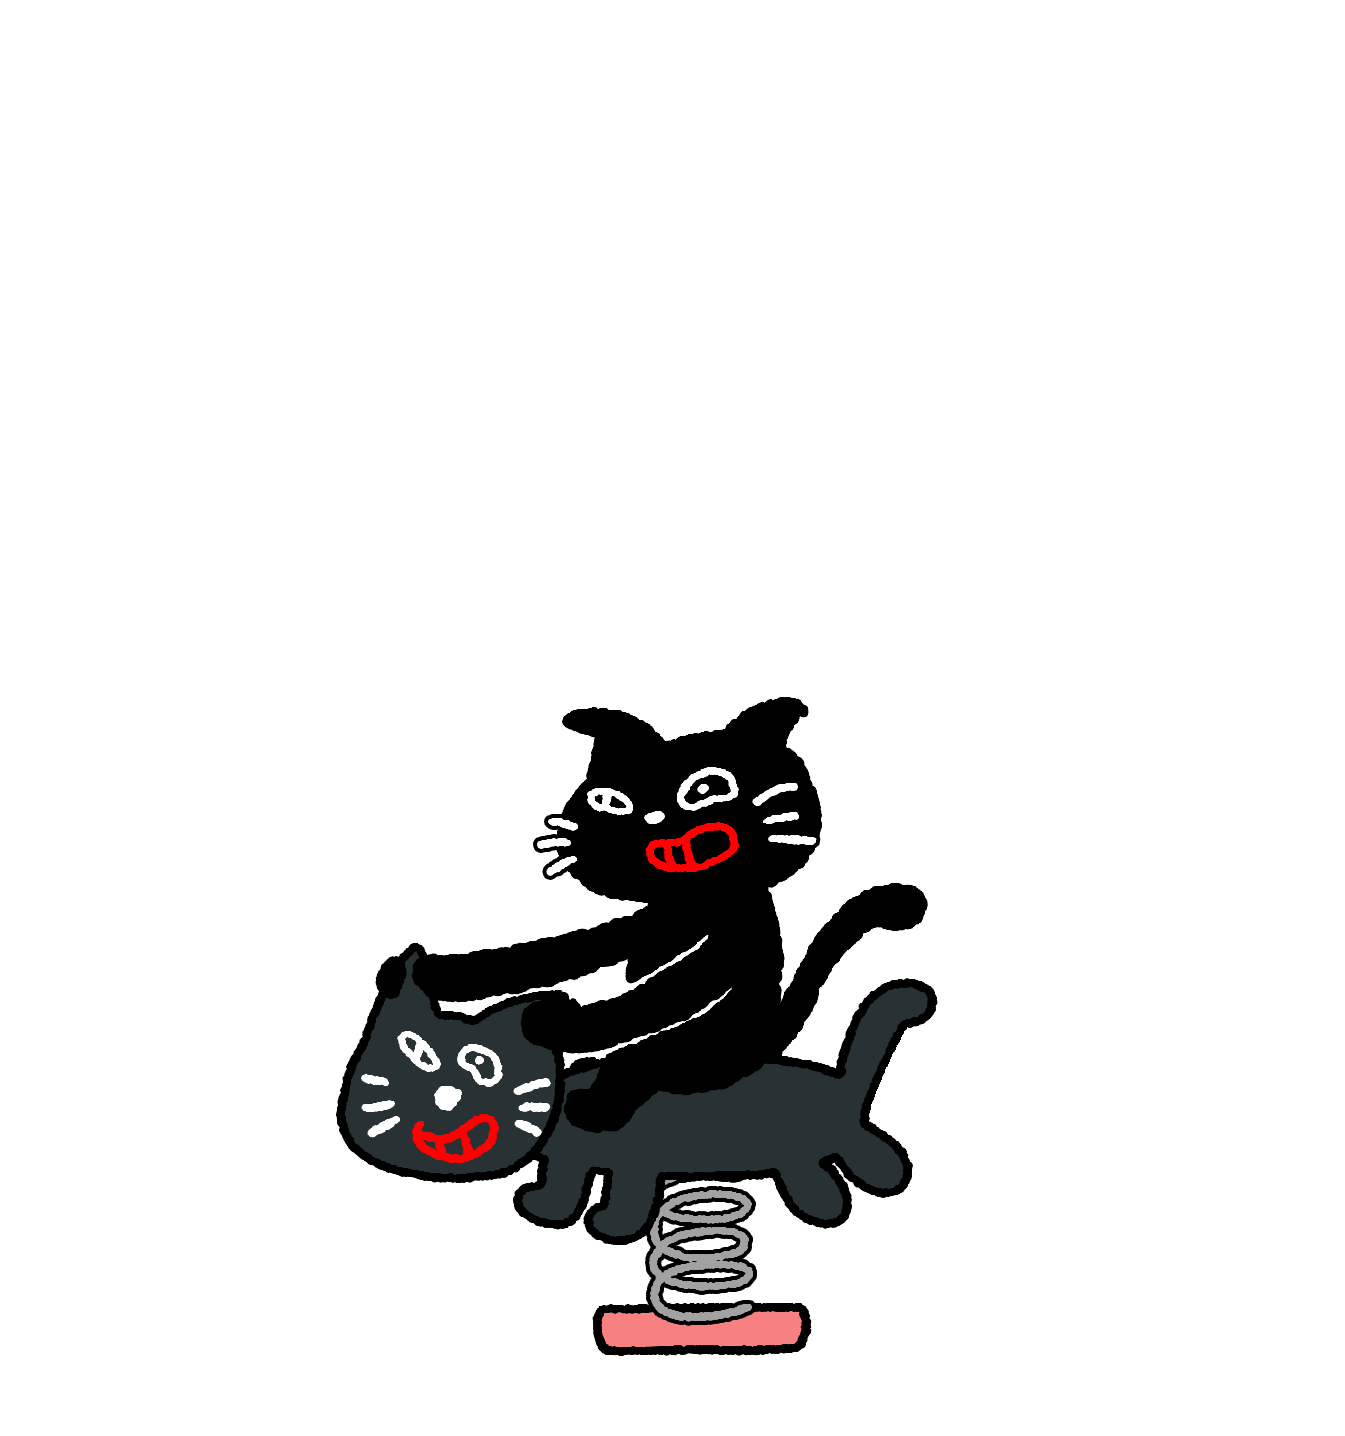 キヨ猫型の遊具にのって遊ぶキヨ猫のアニメーション